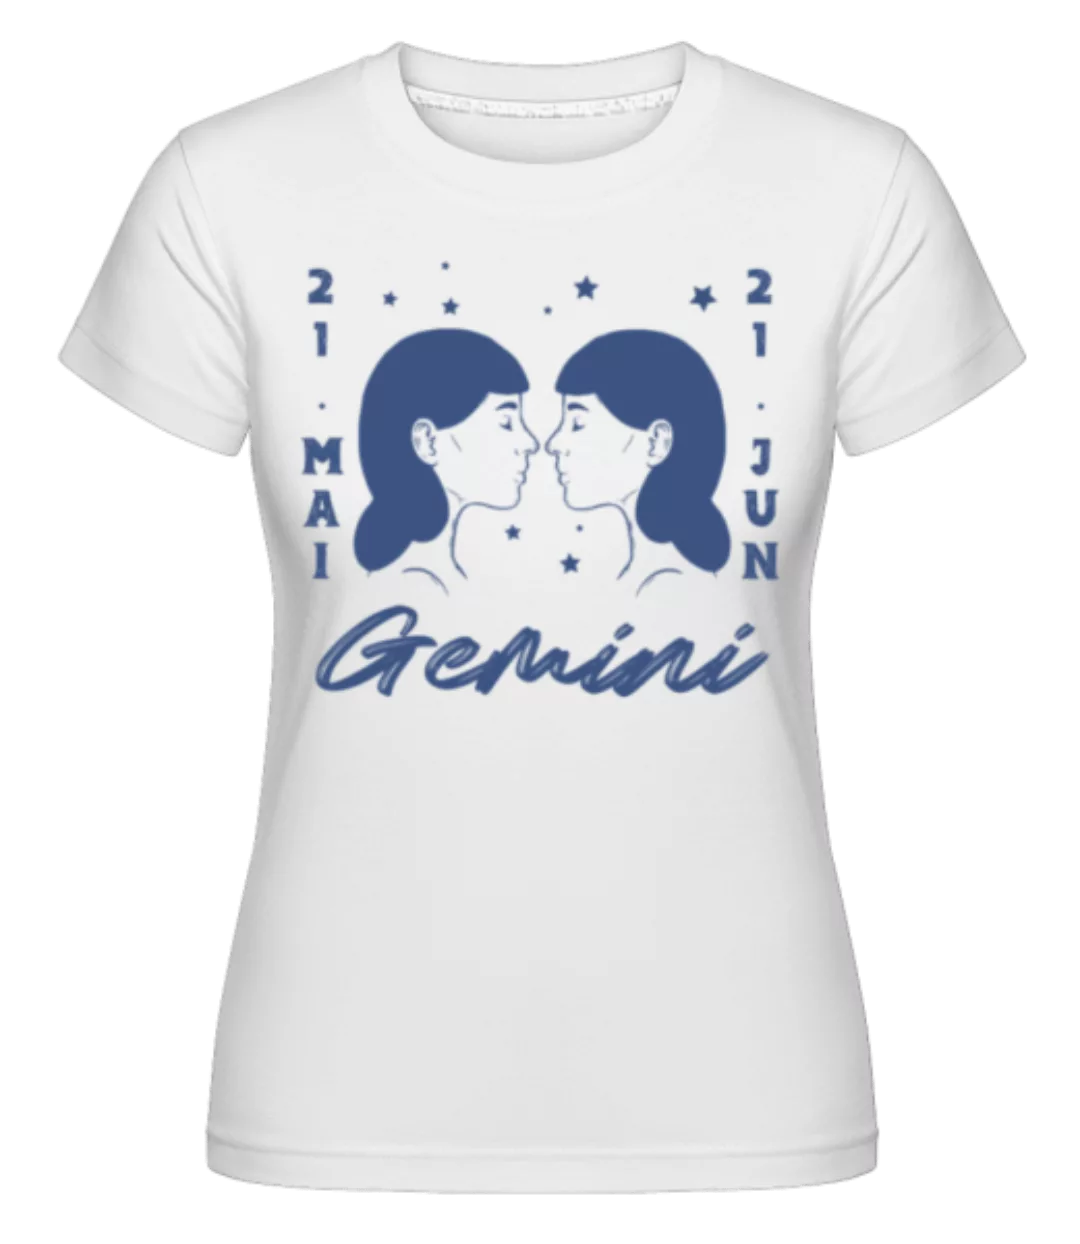 Sternzeichen Gemini Datum · Shirtinator Frauen T-Shirt günstig online kaufen